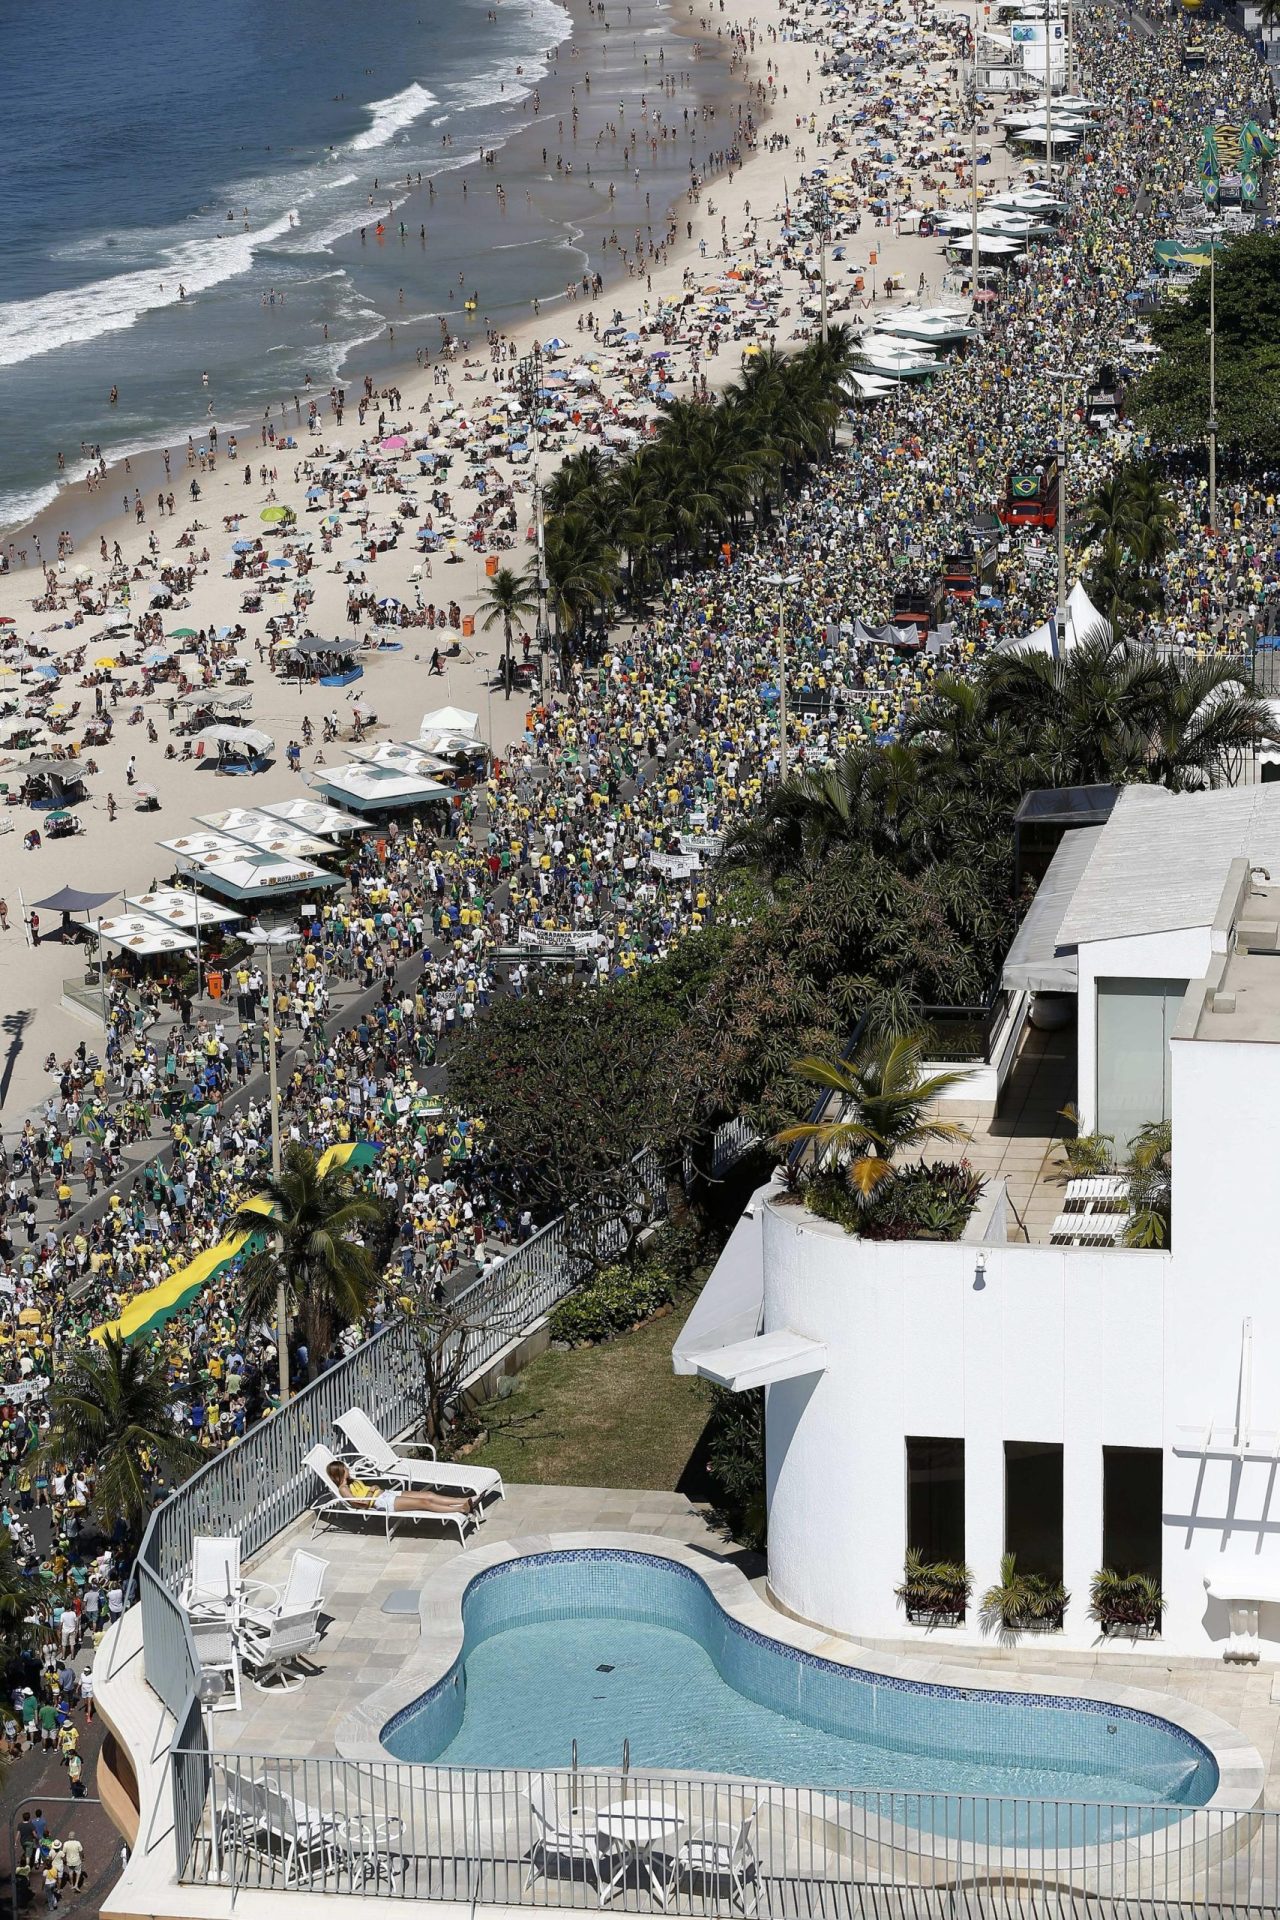 Crise. Brasileiros saem à rua em protesto contra governo